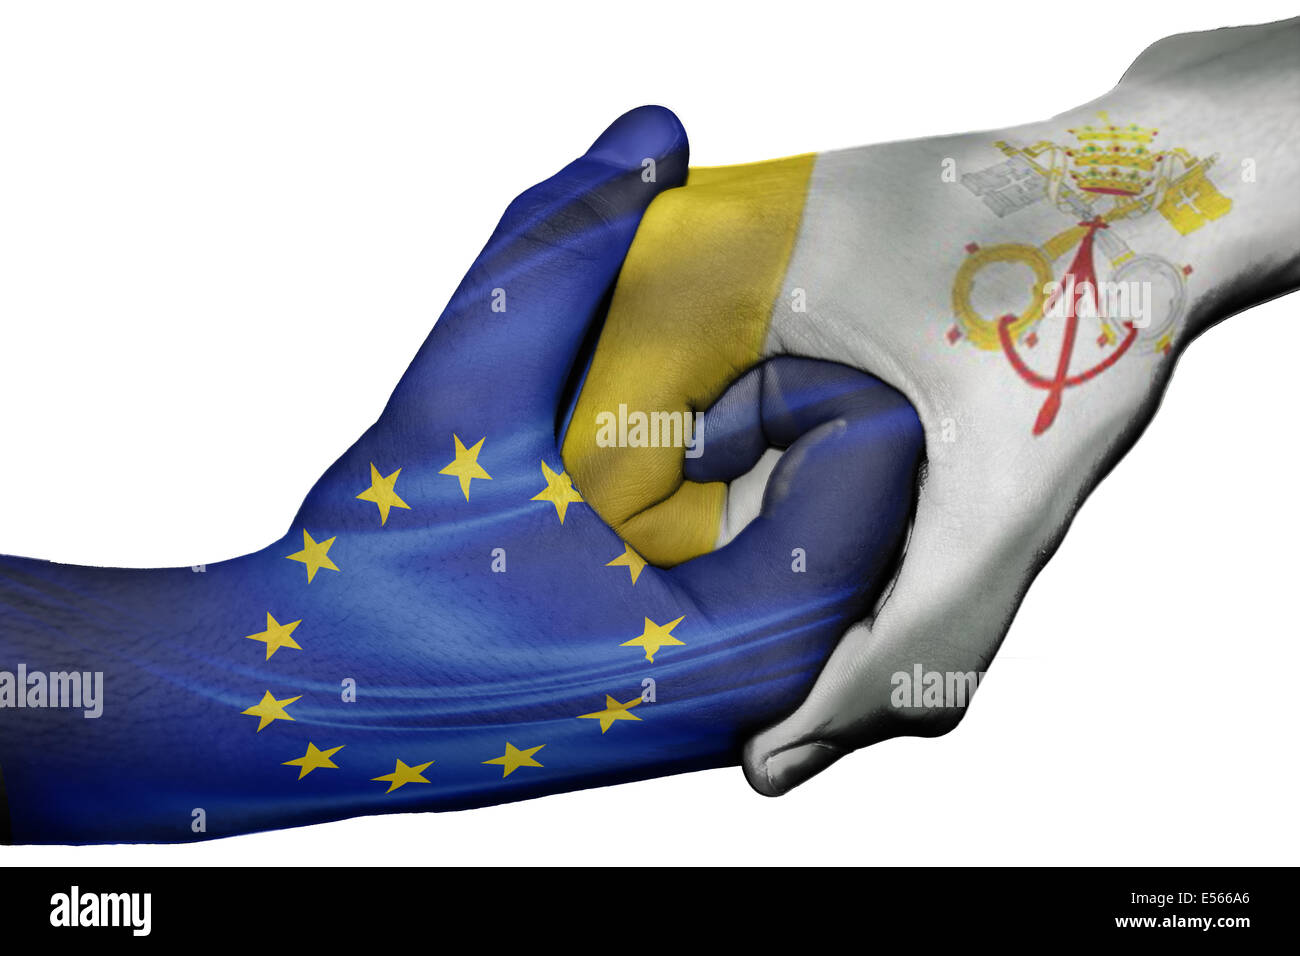 Handshake diplomatiche tra paesi: bandiere di Unione europea e Città del Vaticano sovradipinta le due mani Foto Stock